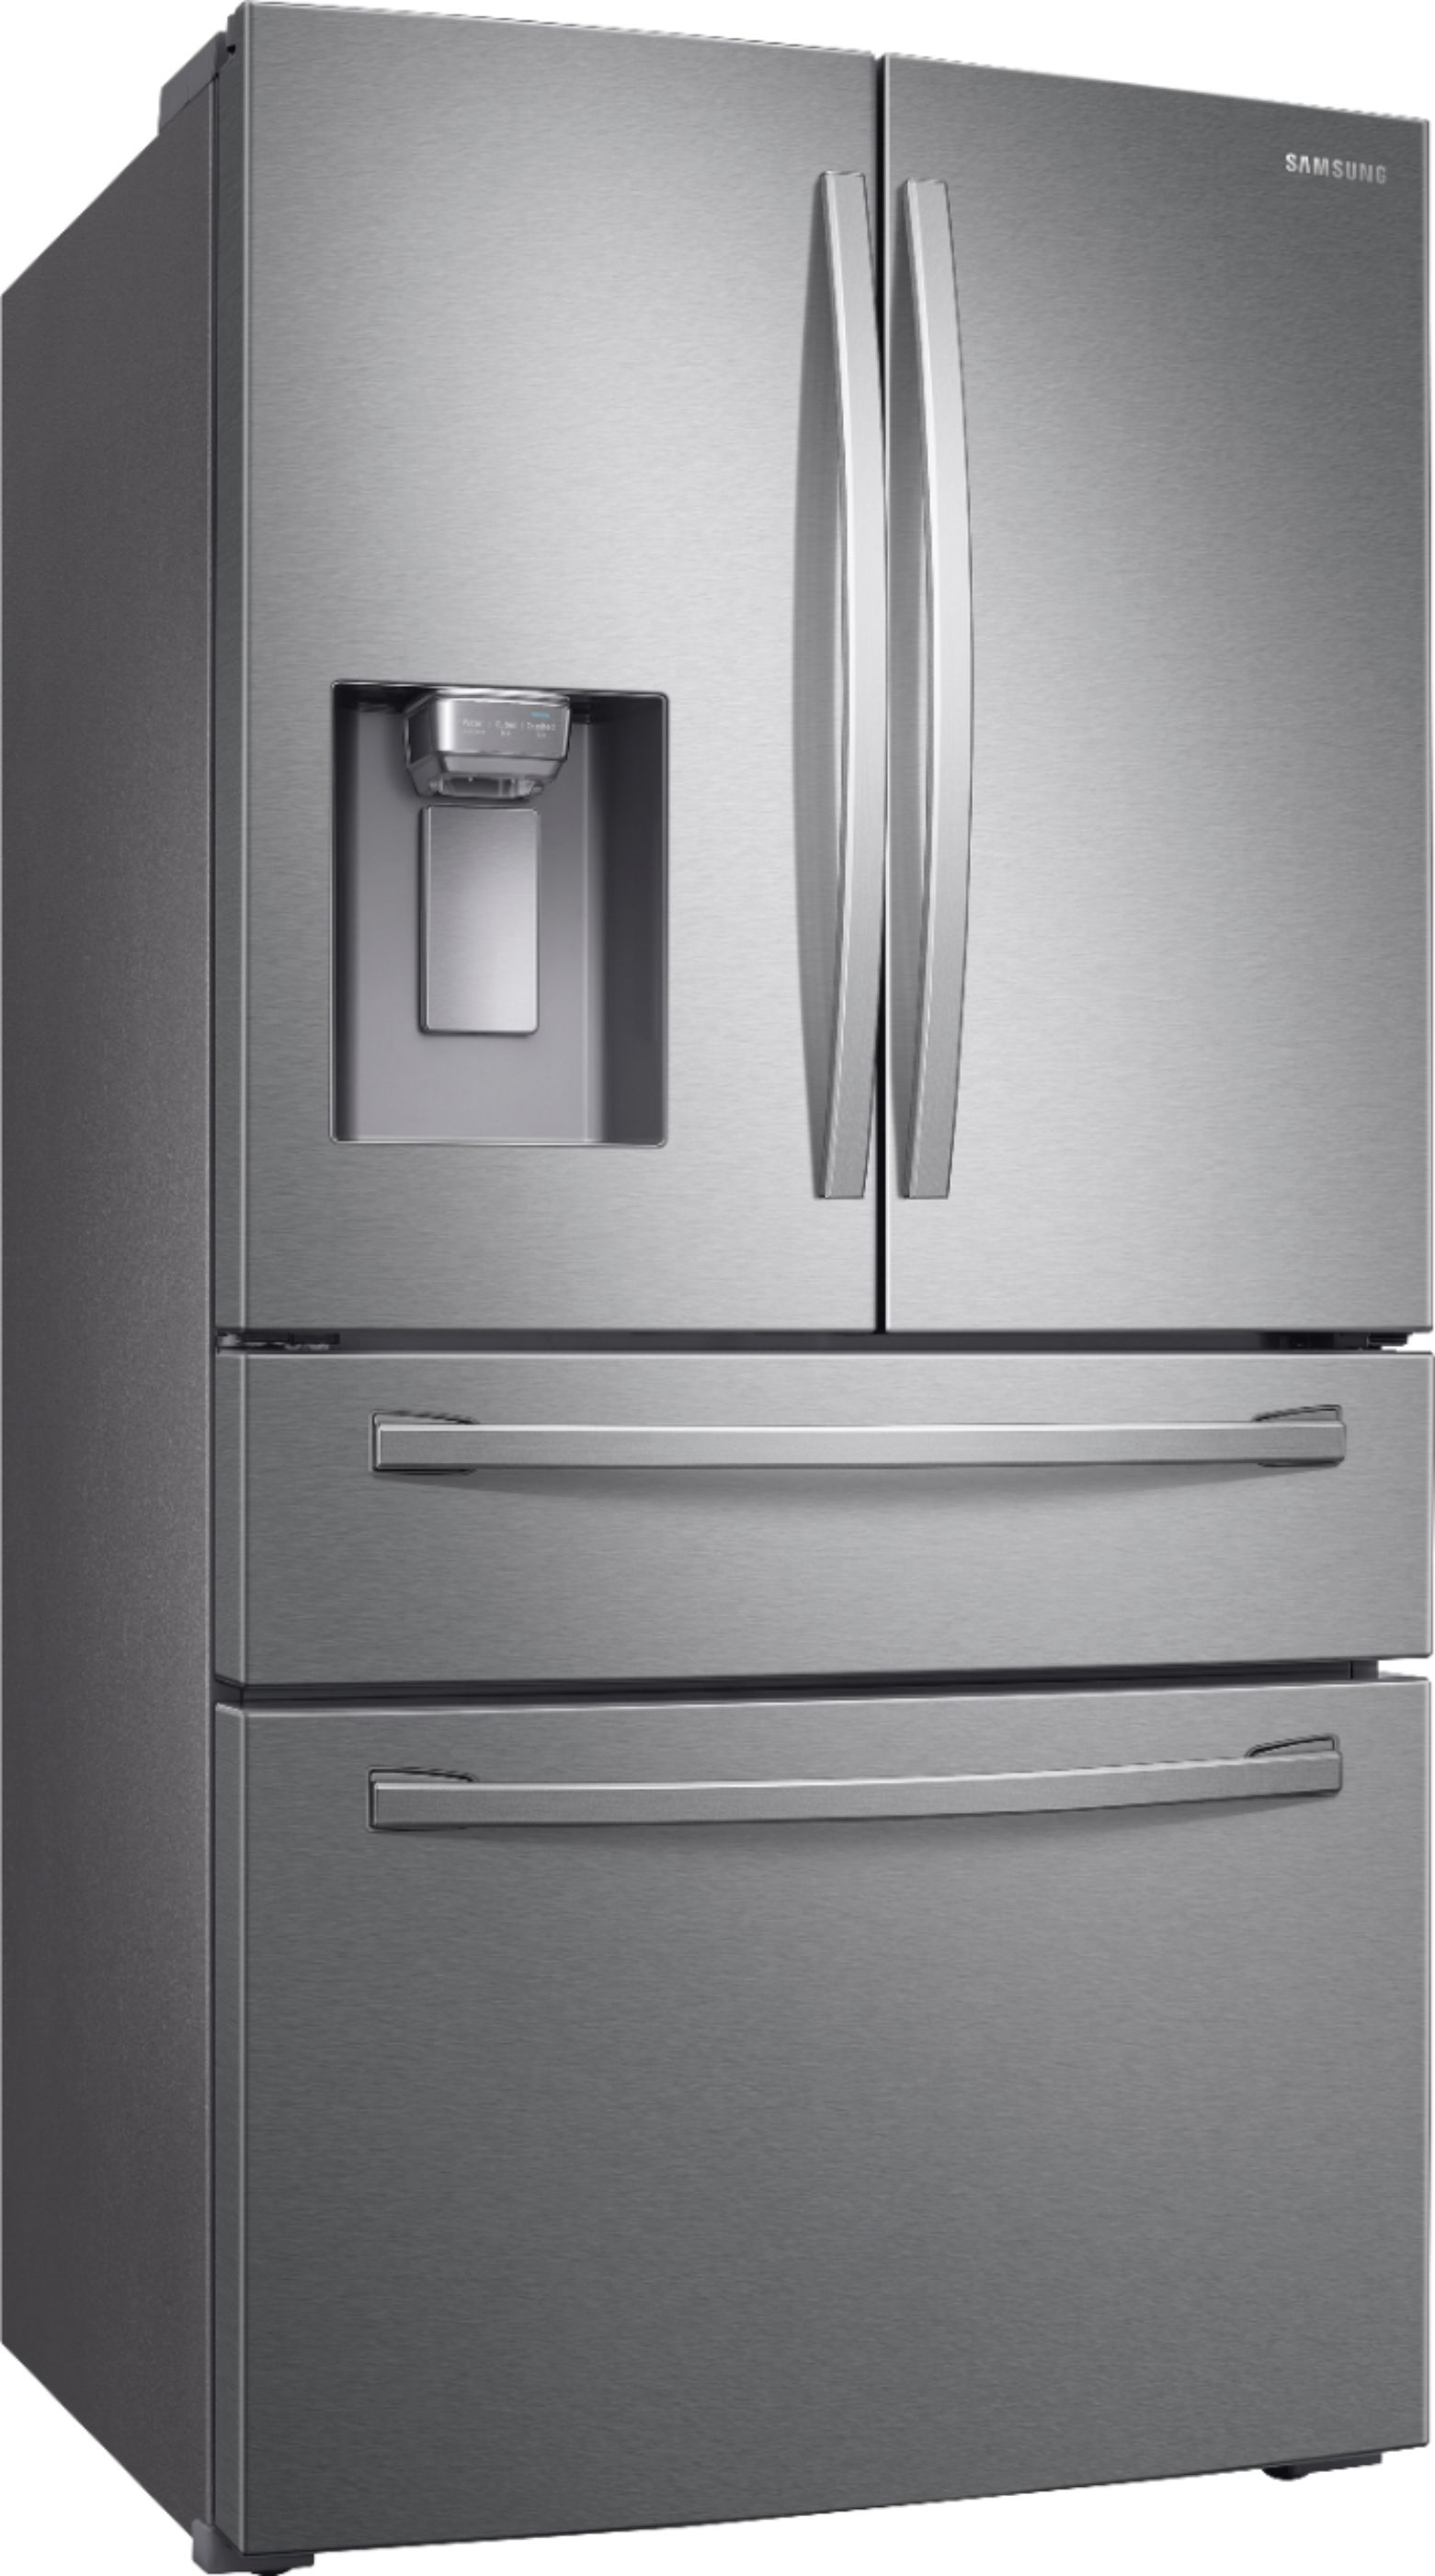 Samsung 36 4-door Flex French Door,Refrigerator,Stainless Steel,Full S –  APPLIANCE BAY AREA